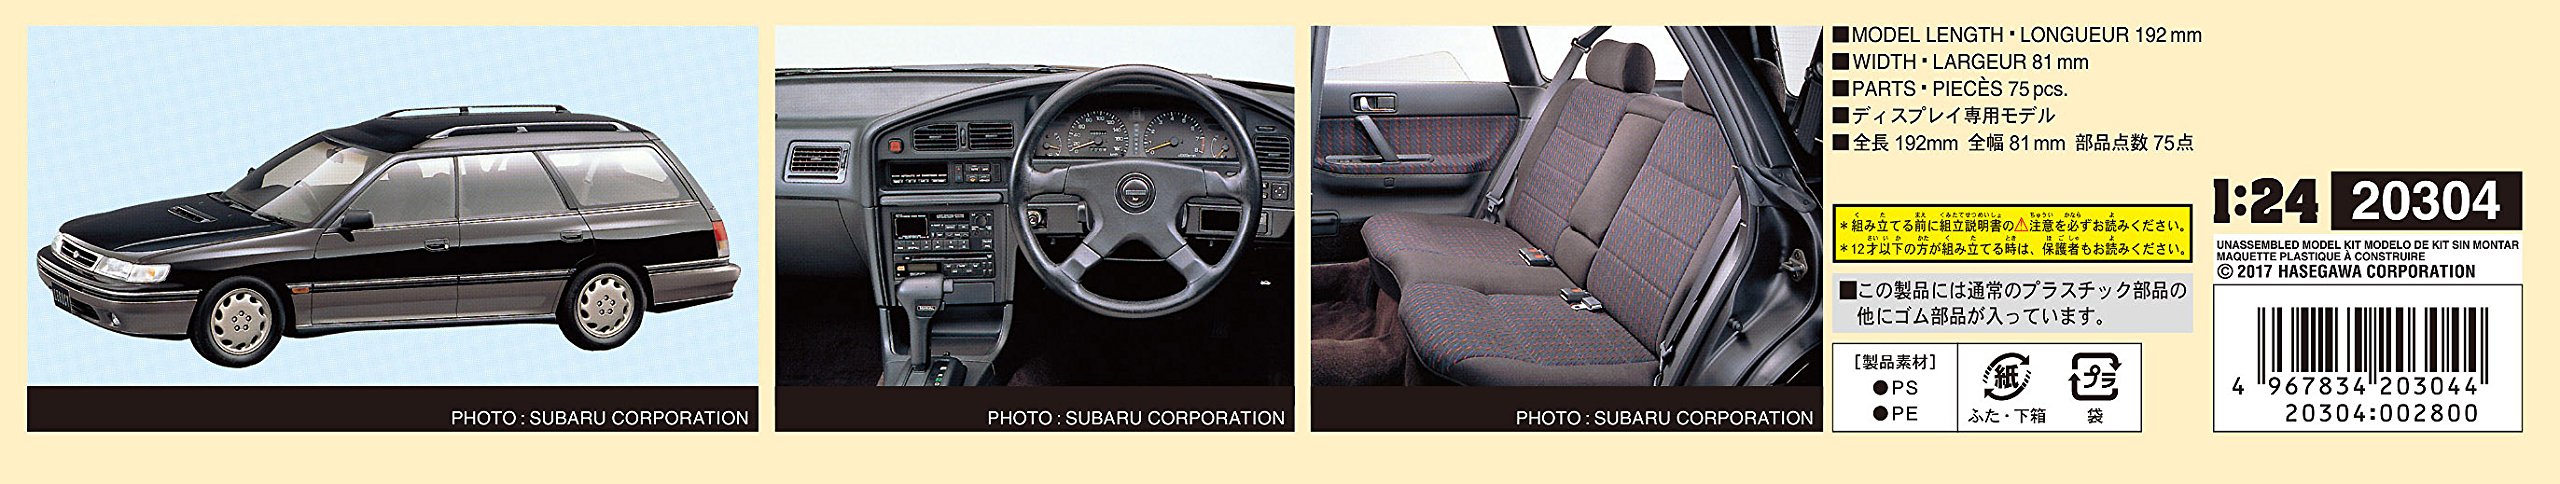 HASEGAWA 20304 Subaru Legacy Gt Touring Wagon 1/24 Scale Kit